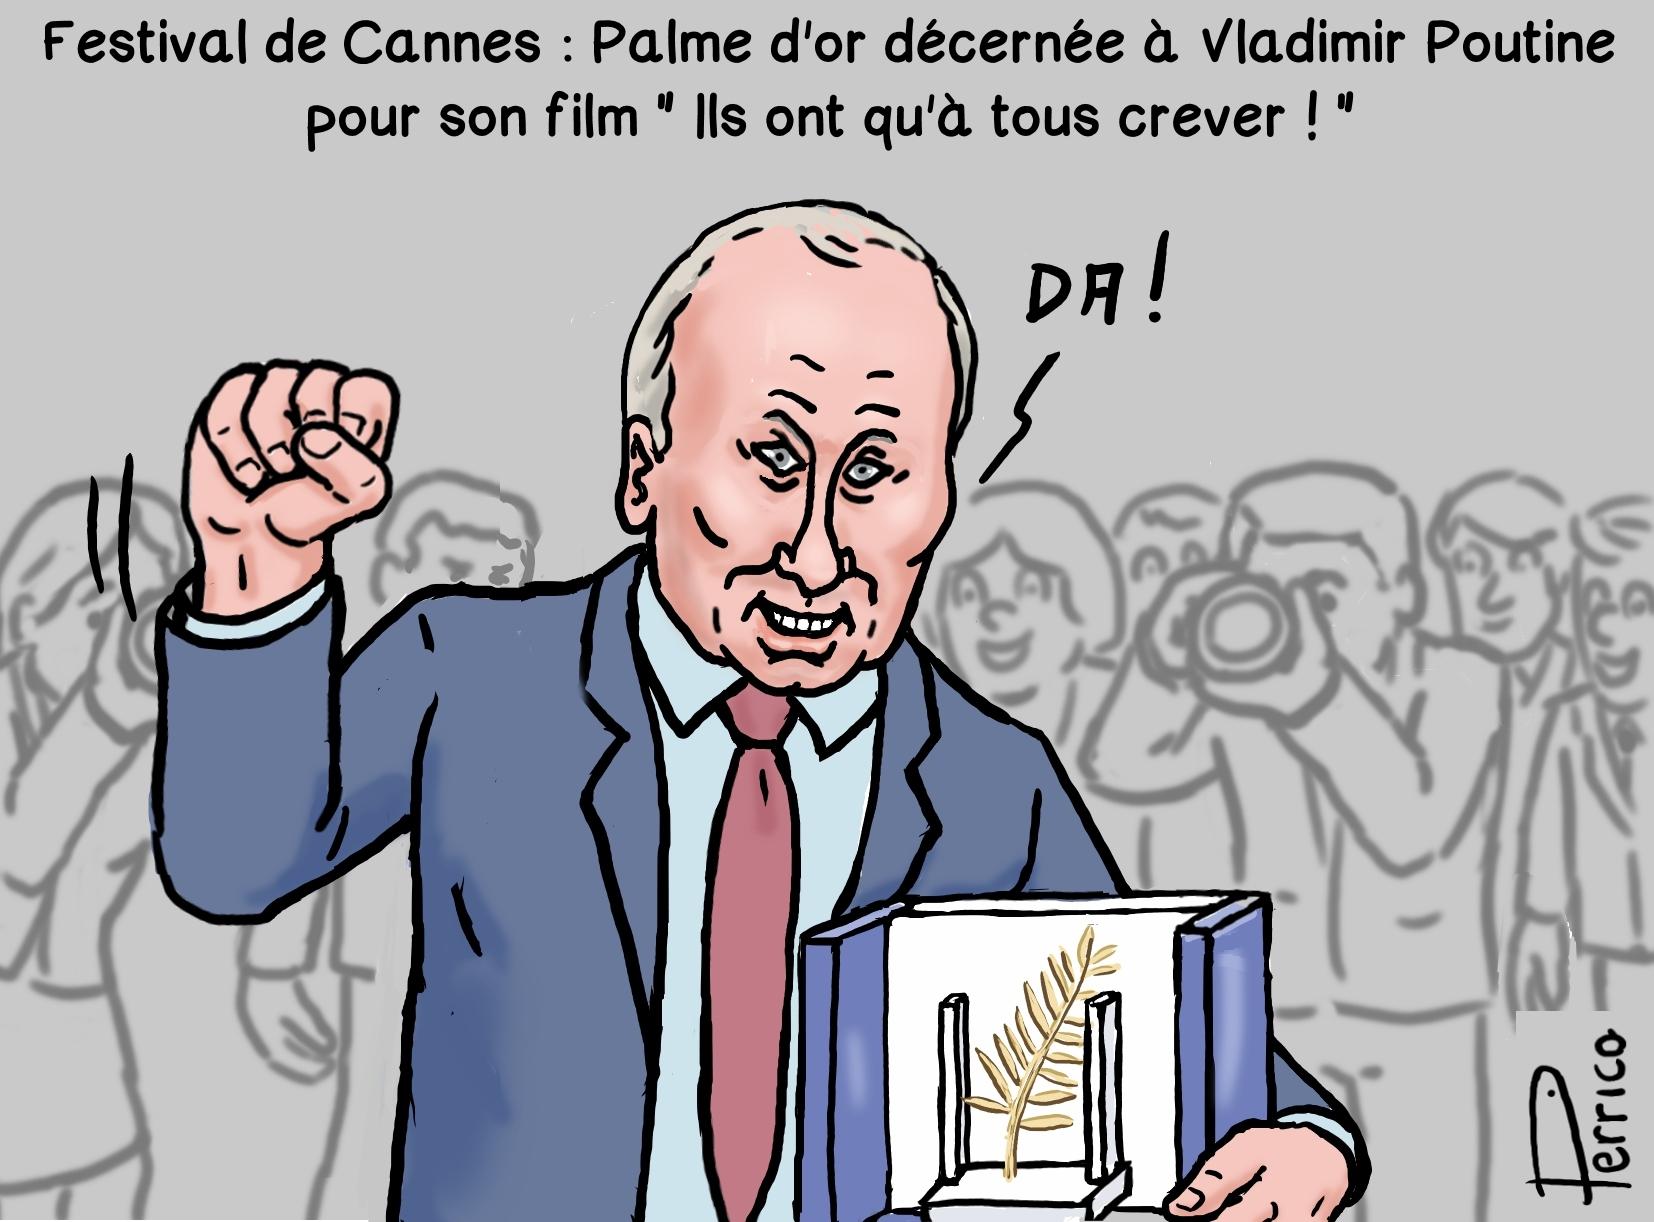 Poutine au Festival de Cannes